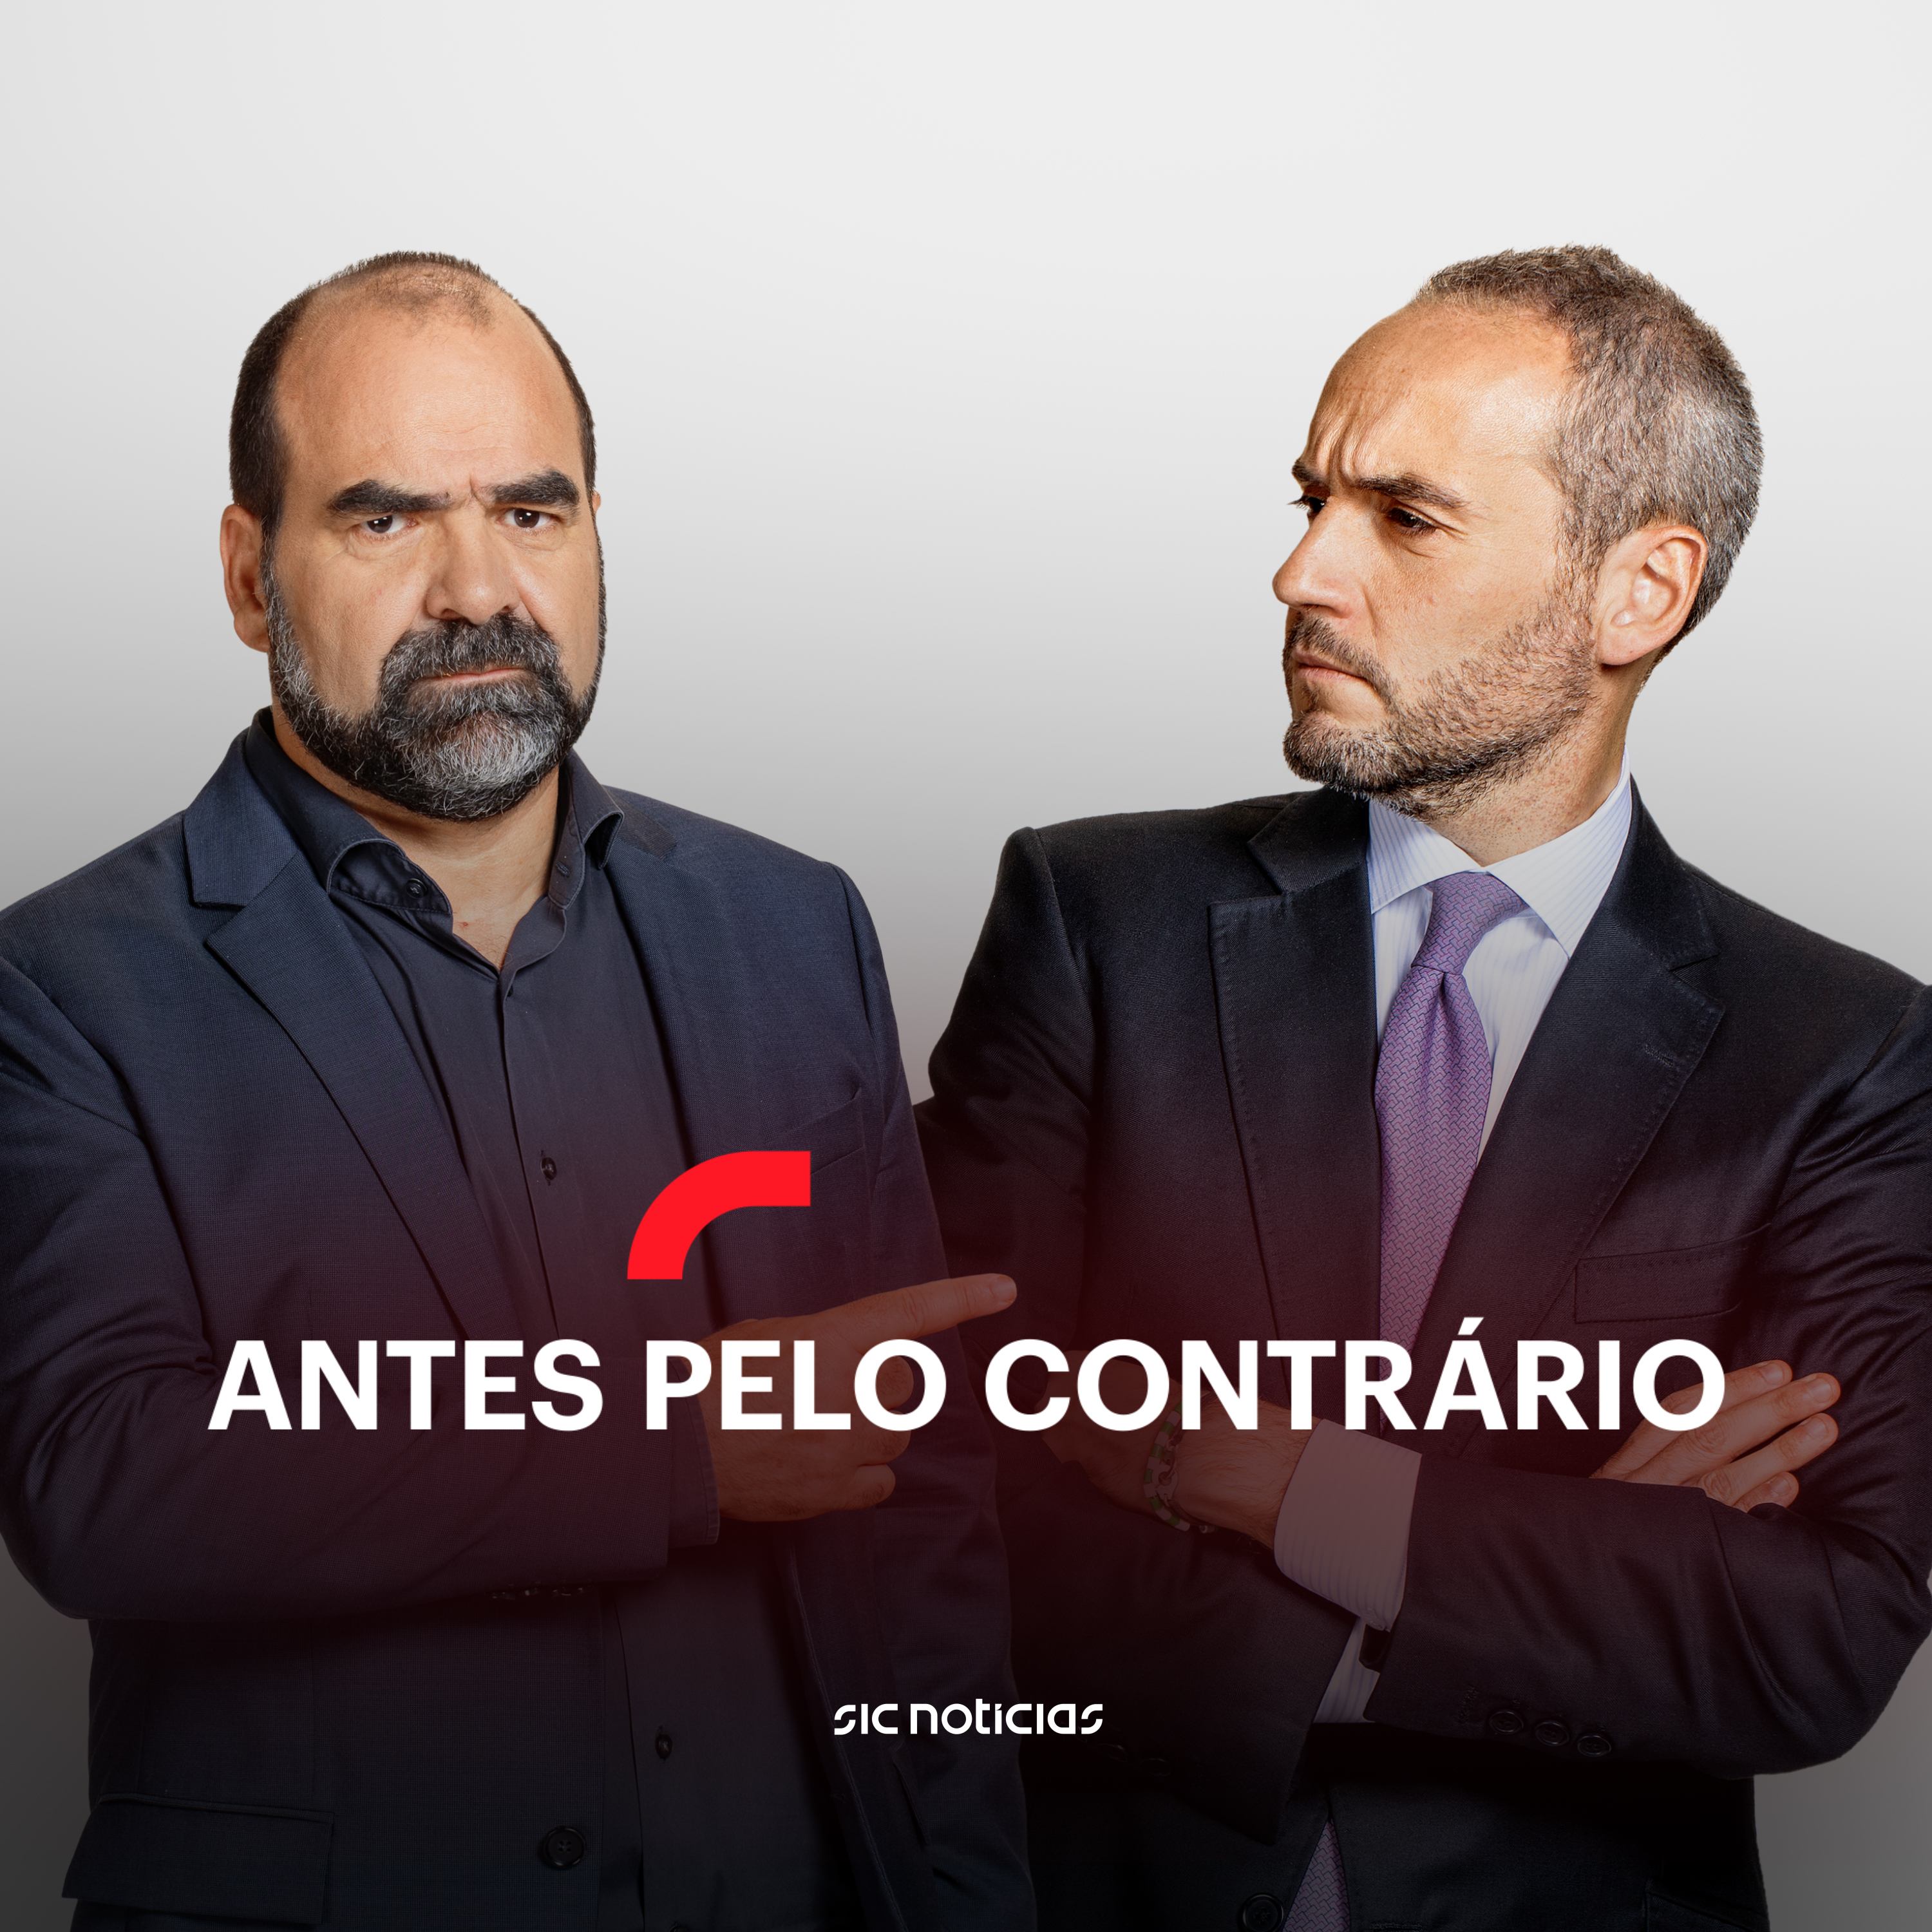 Pedro Nuno Santos e Luís Montenegro, um debate decisivo. Mas e os indecisos?